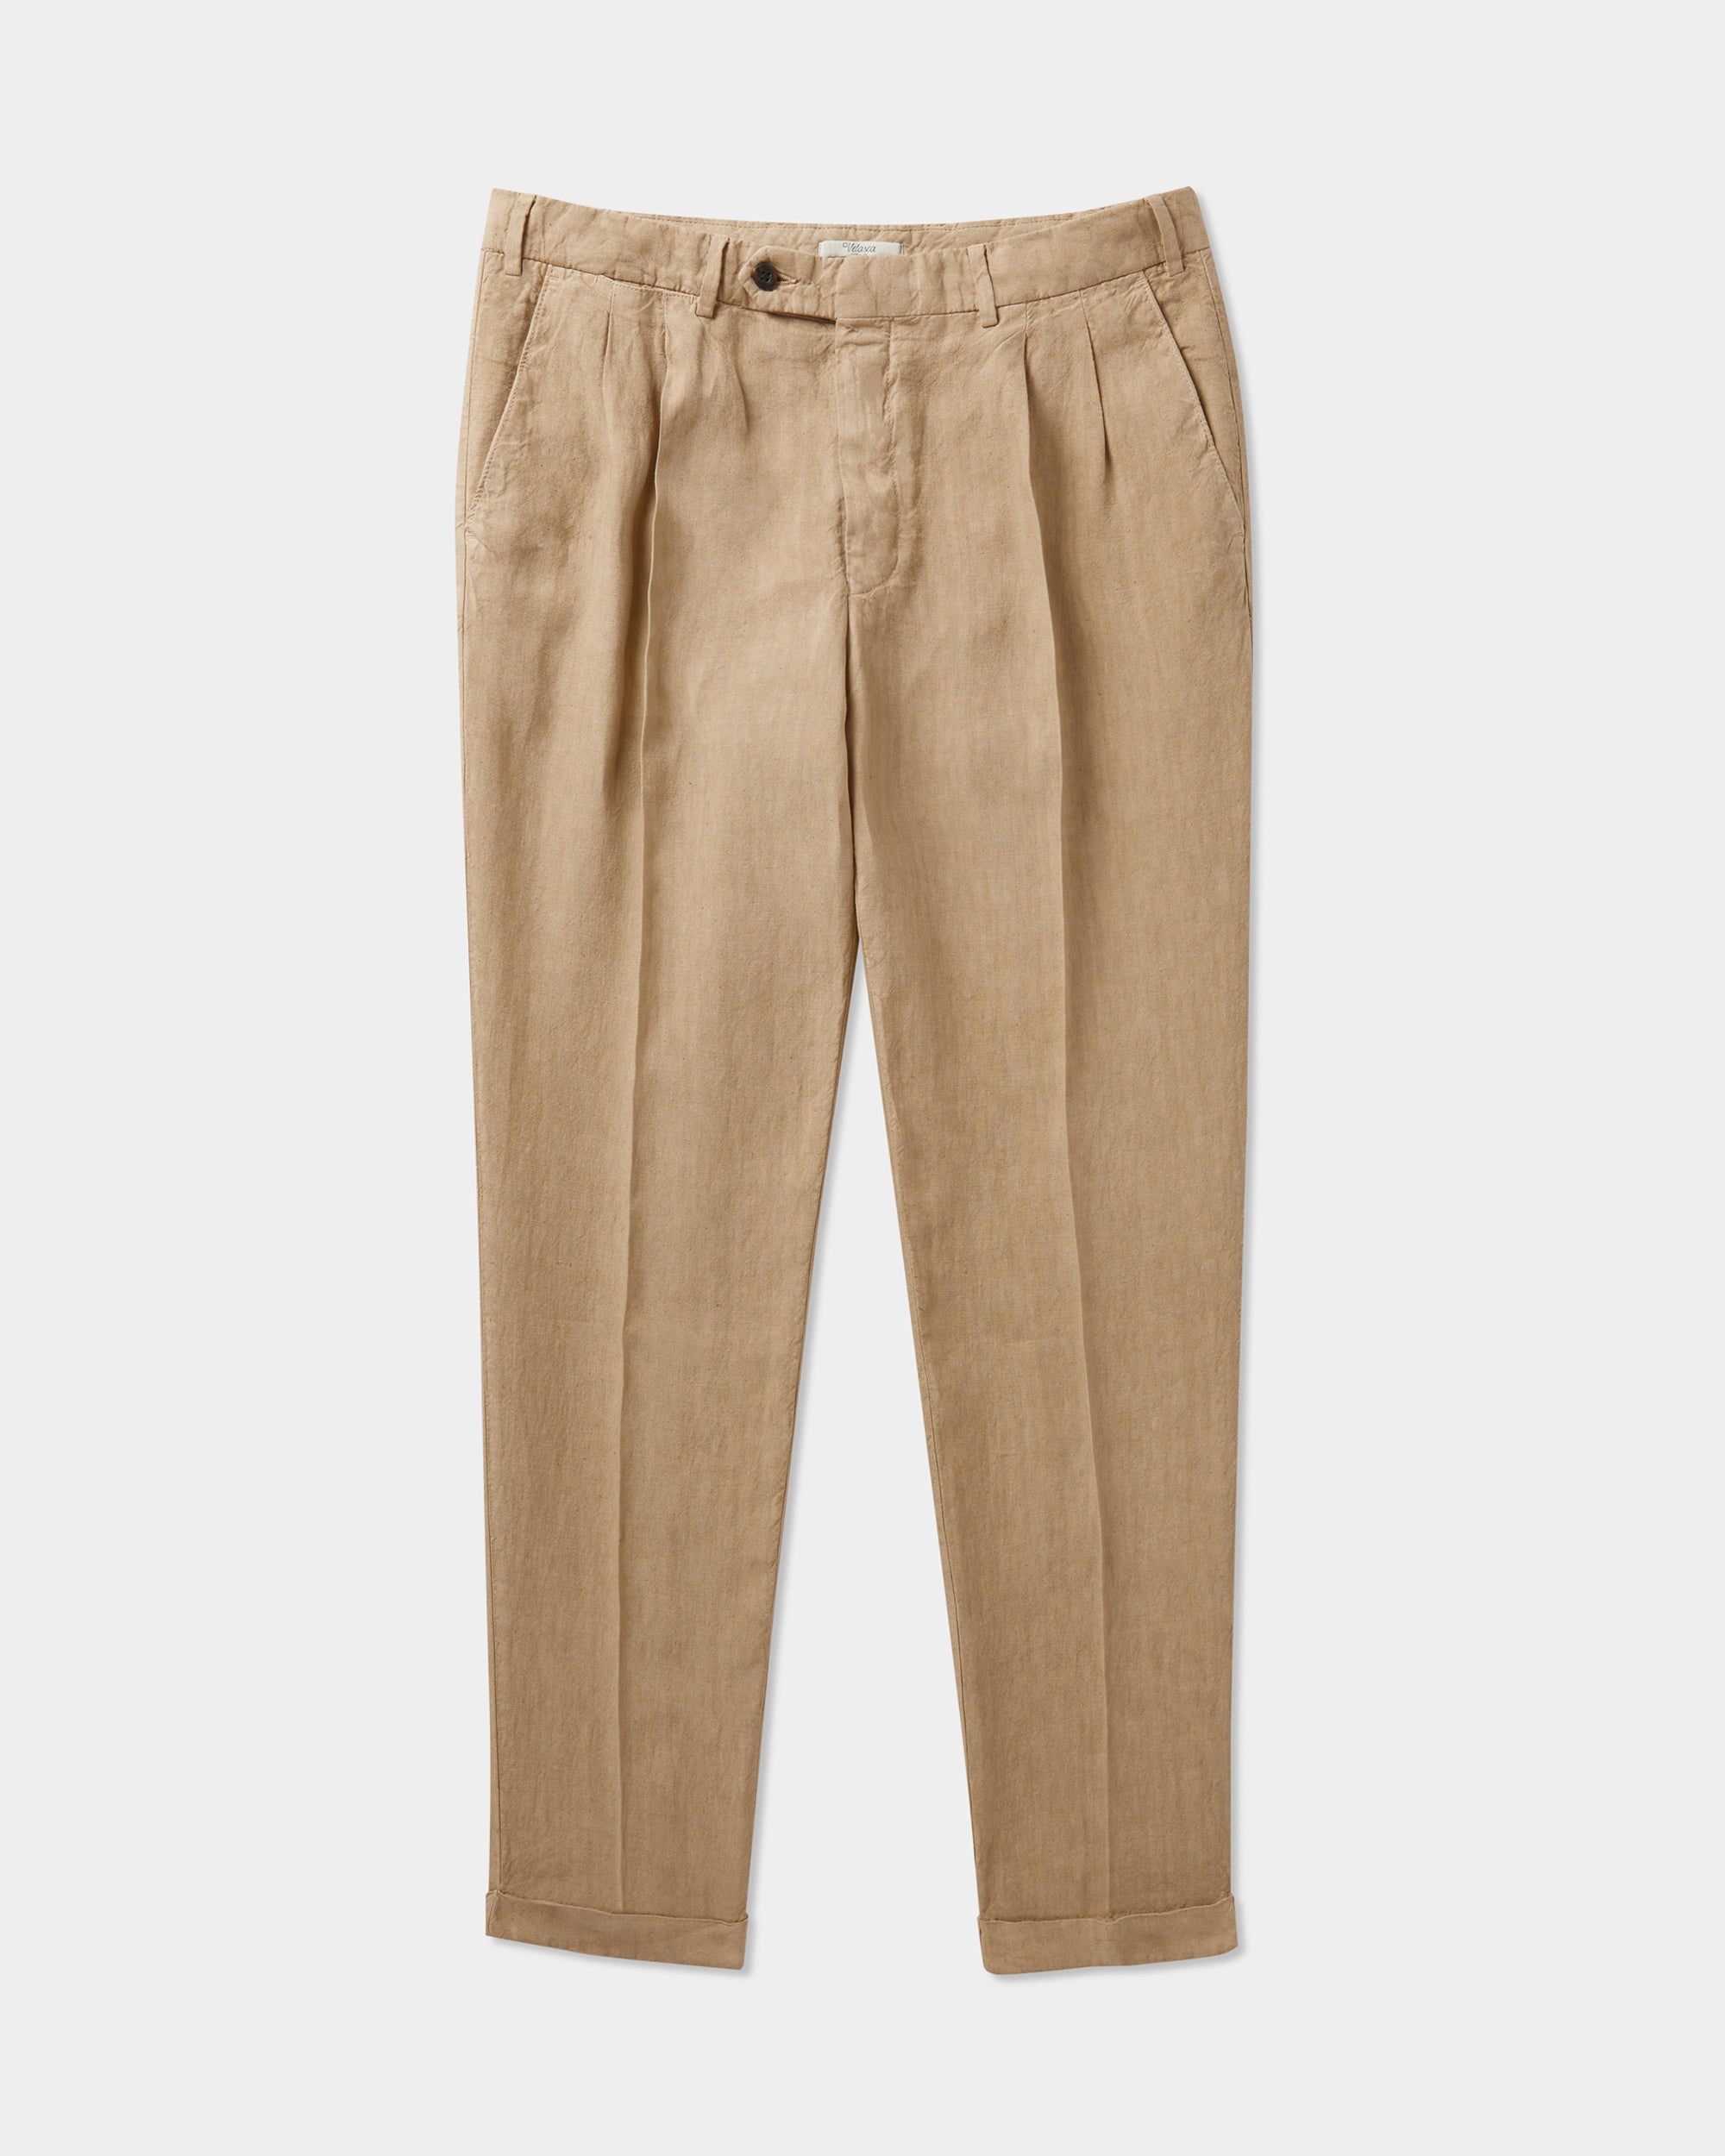 Pantaloni di lino per look very fresh questa estate 2020